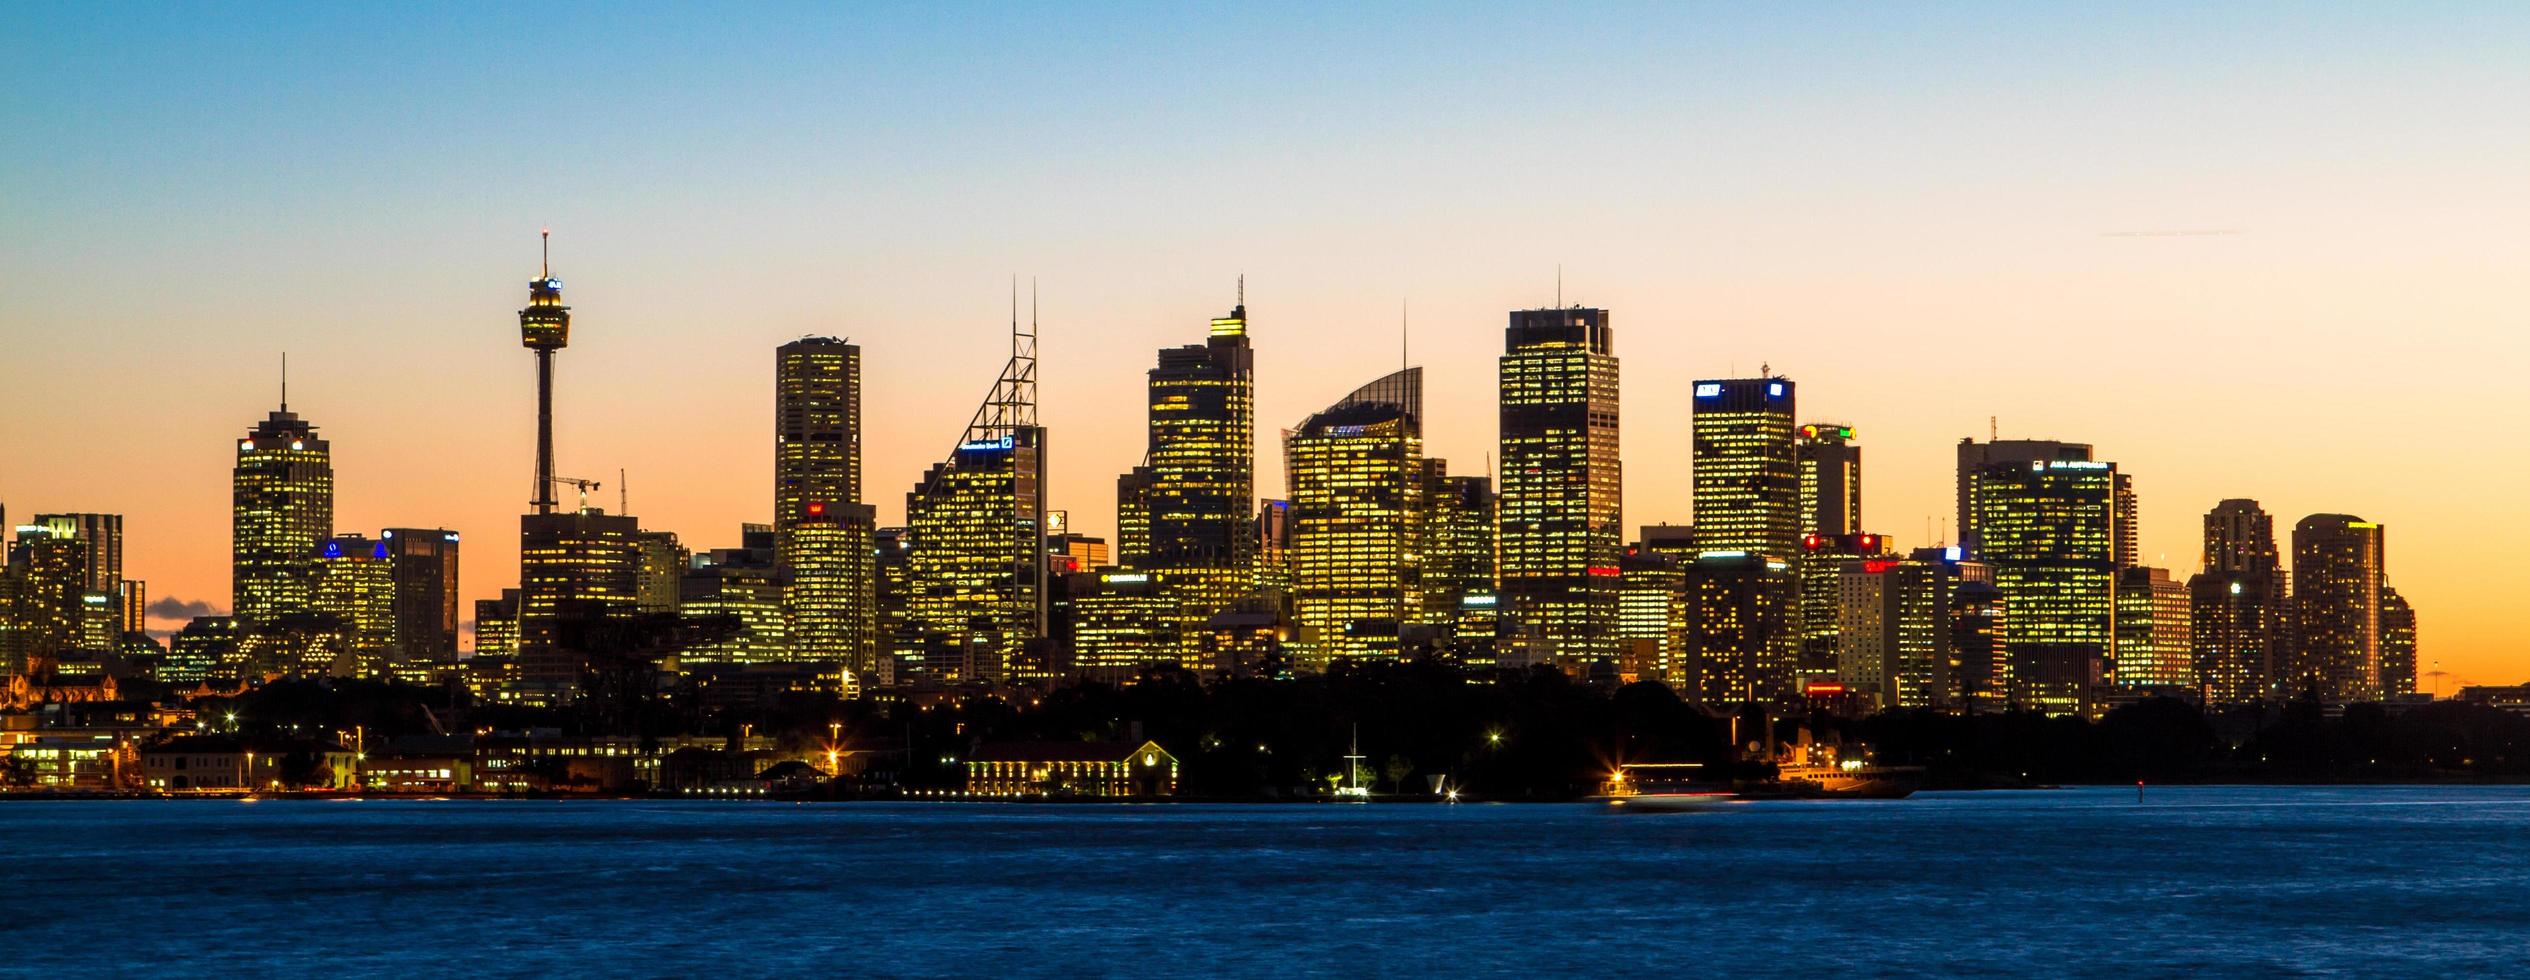 sydney, australia, 2020 - paesaggio urbano al tramonto foto